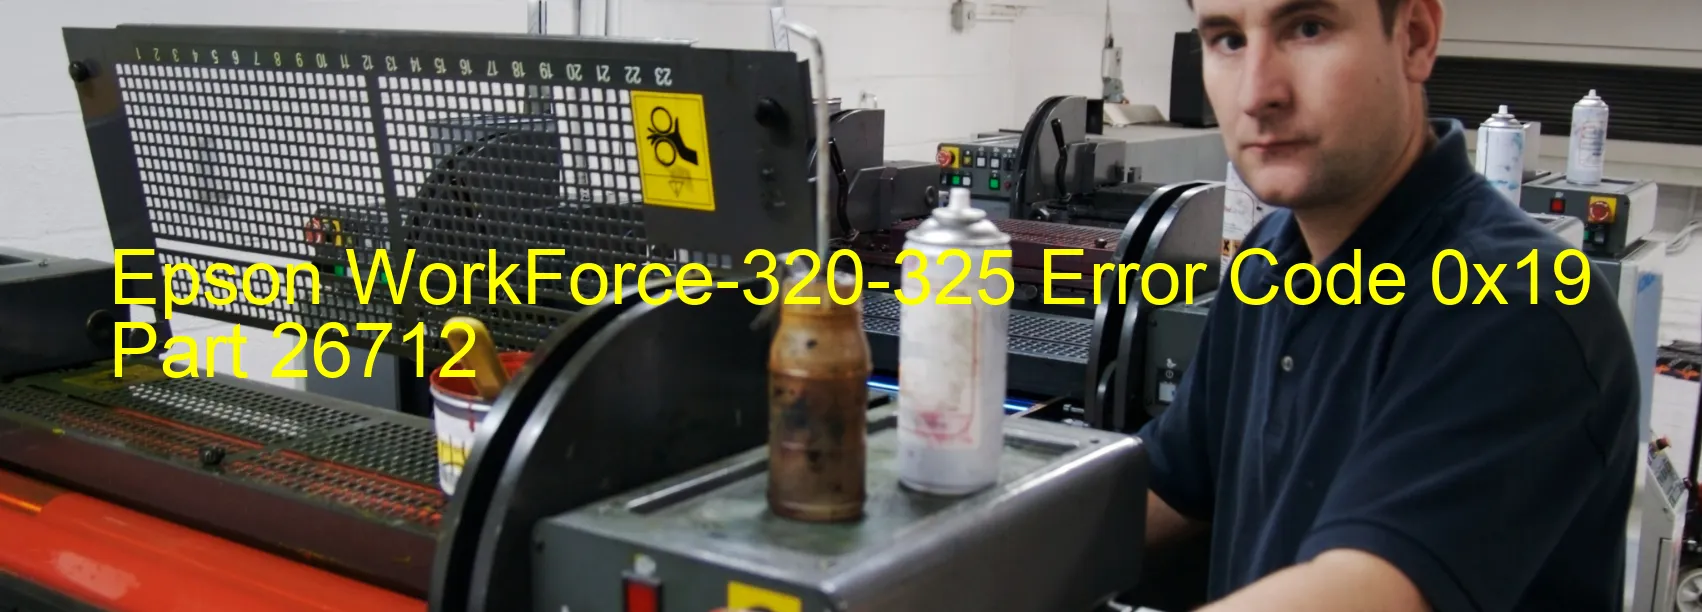 Epson WorkForce-320-325 Error 0x19